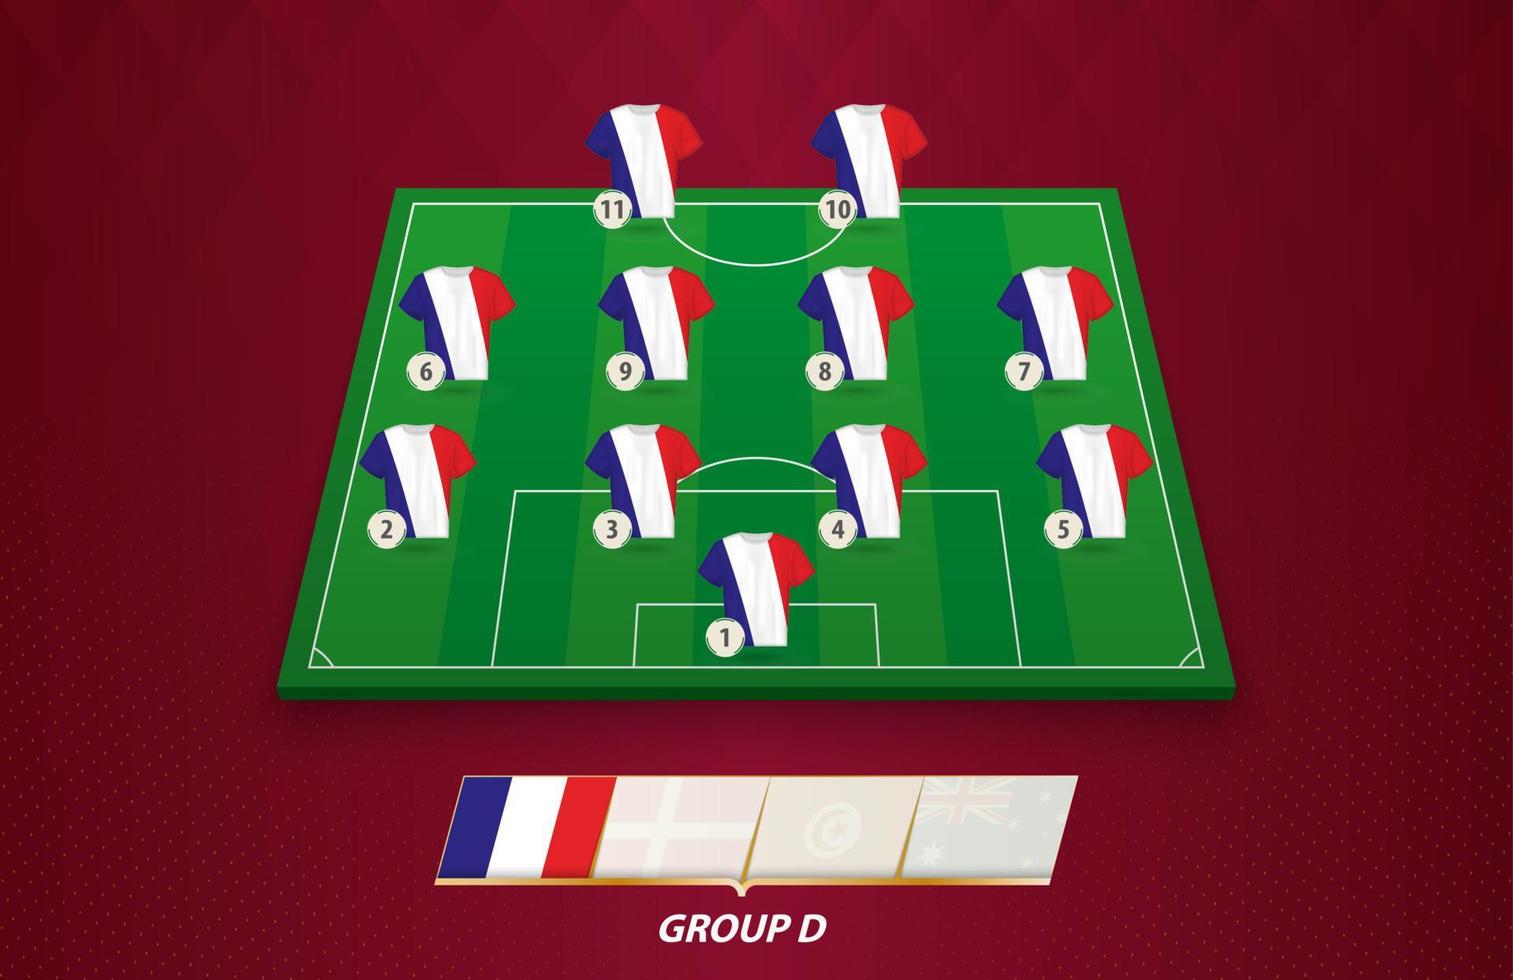 campo de futebol com a escalação da seleção francesa para a competição europeia. vetor